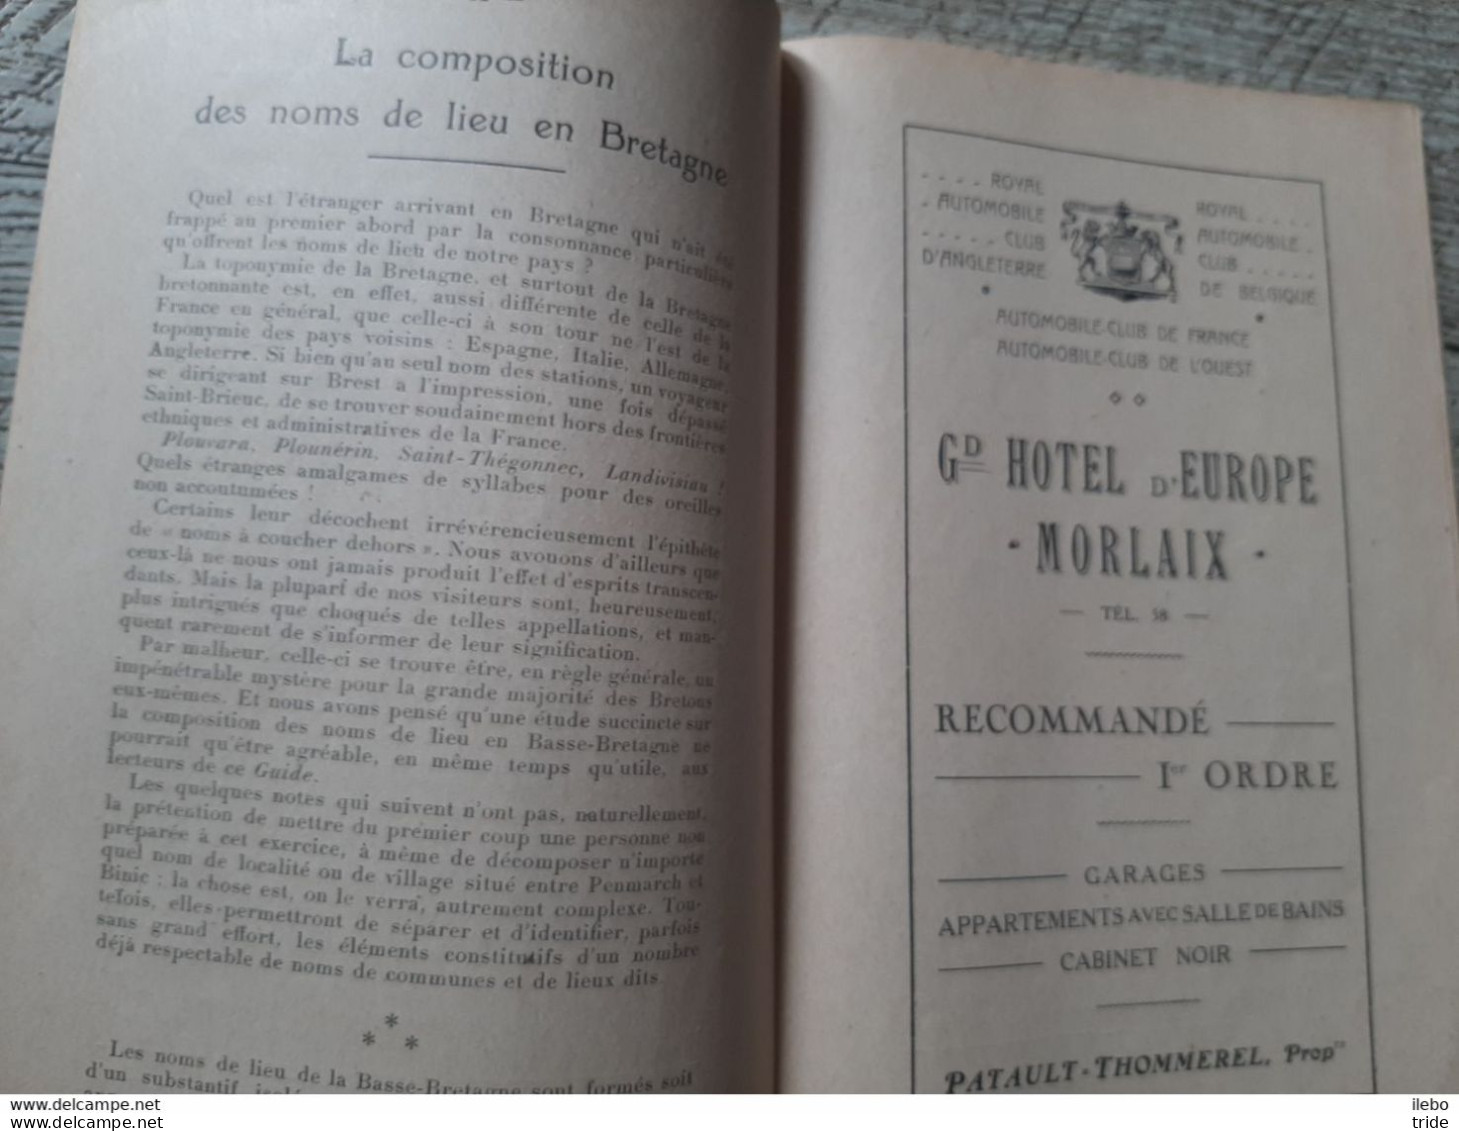 Guide Touristique Morlaix Et Sa Région 1923 Publicités Commerce Plan Excursions - Reiseprospekte